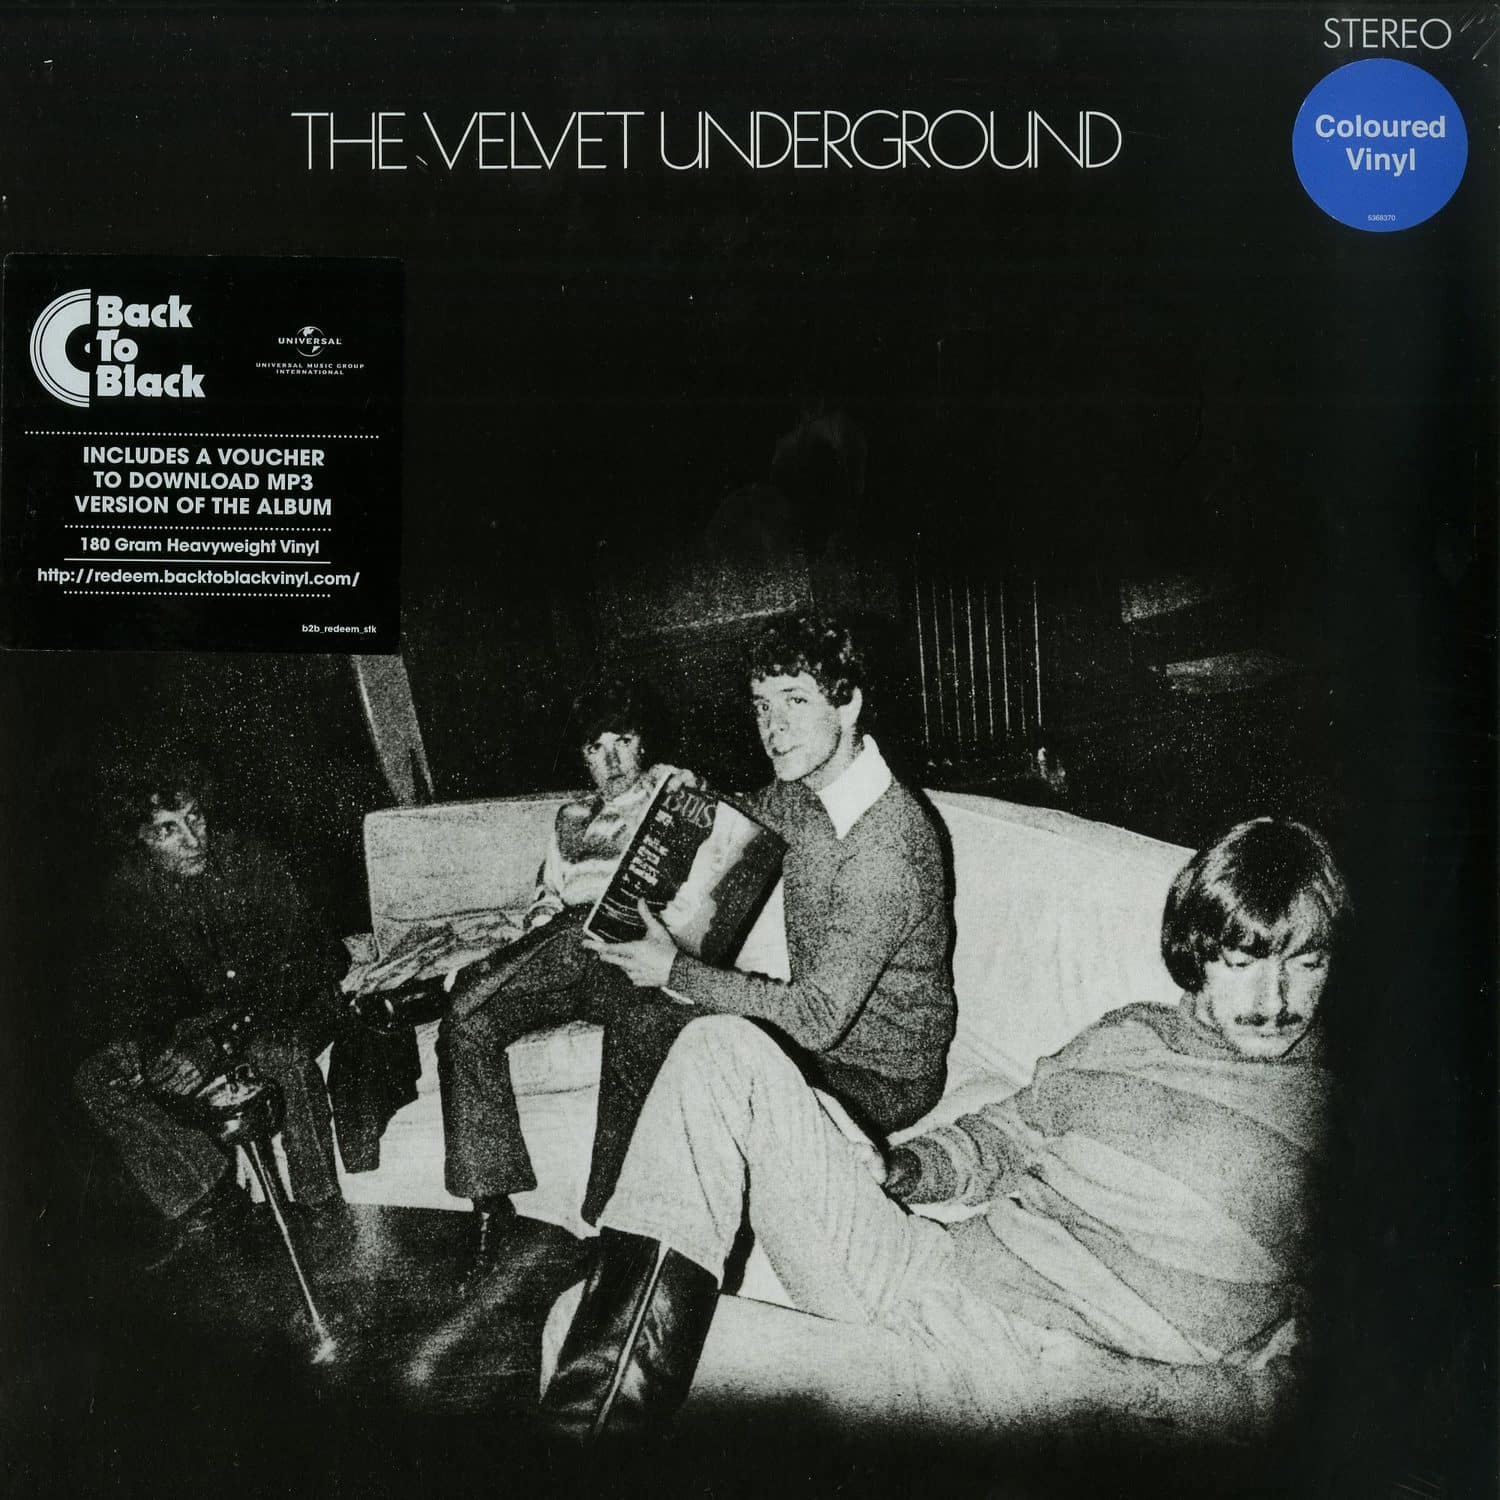 The Velvet Underground - THE VELVET UNDERGROUND 